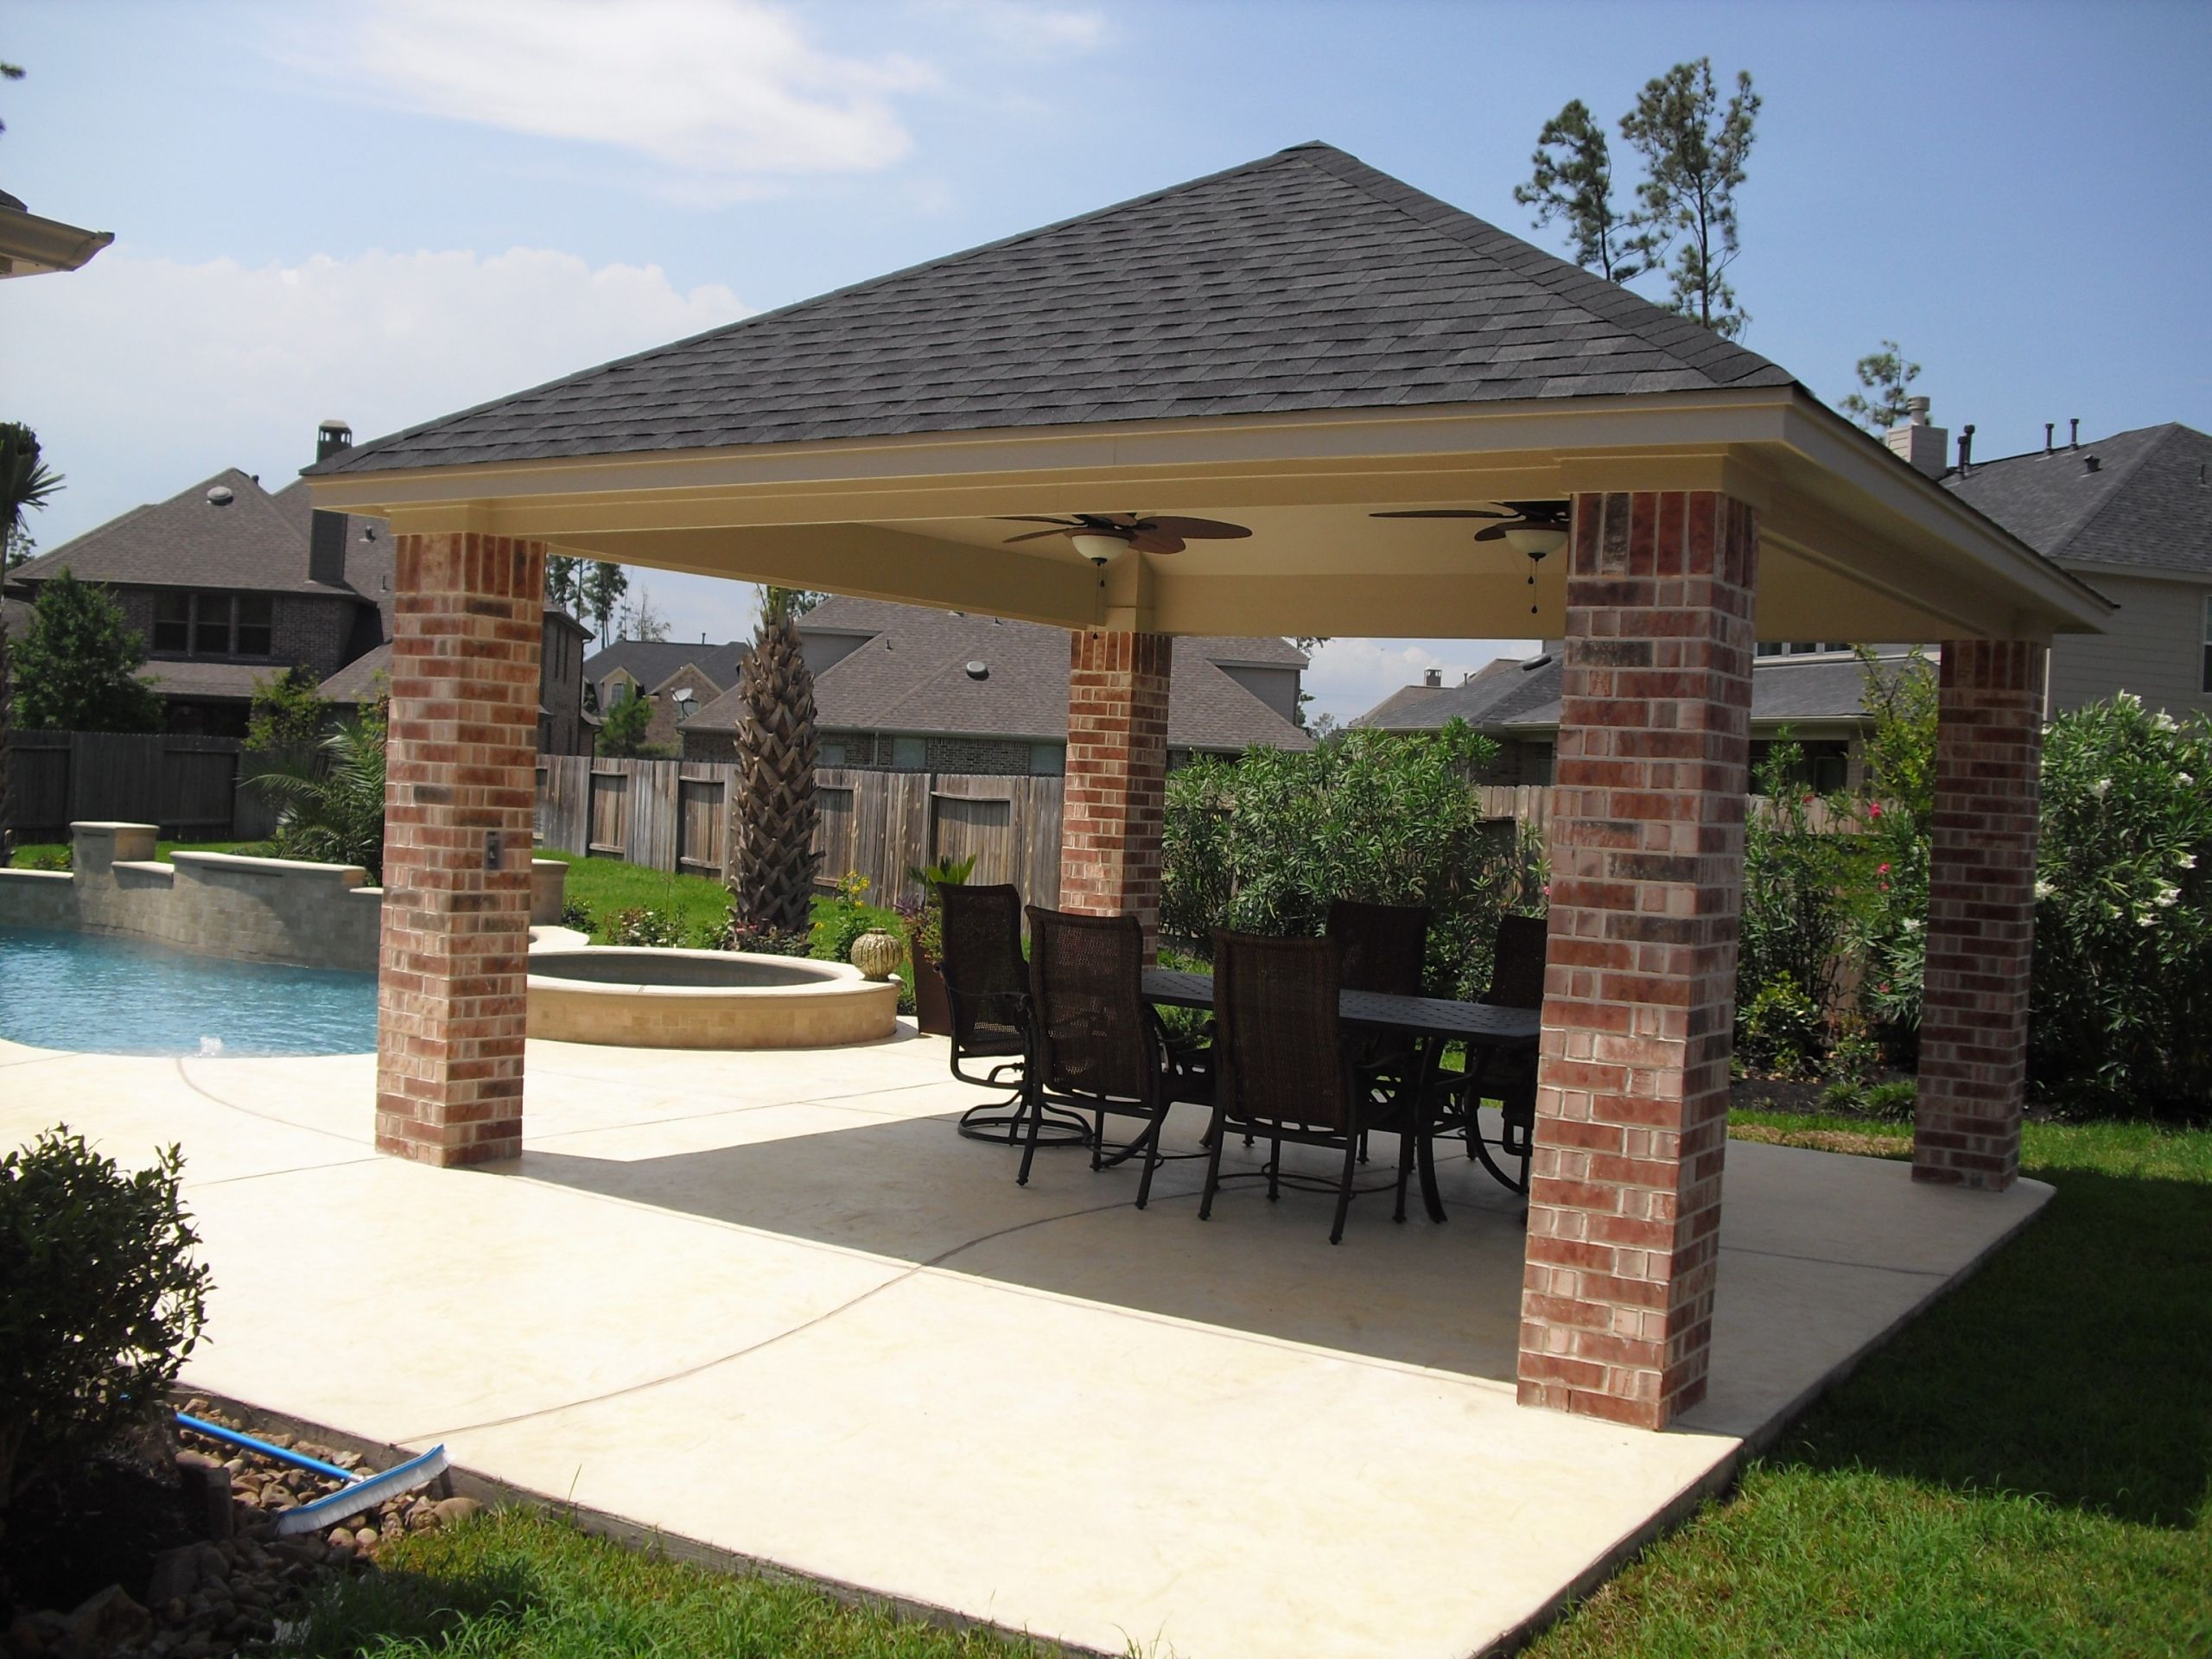 outdoor hampton bay pergola for patio design ideas outdoor patio and backyard